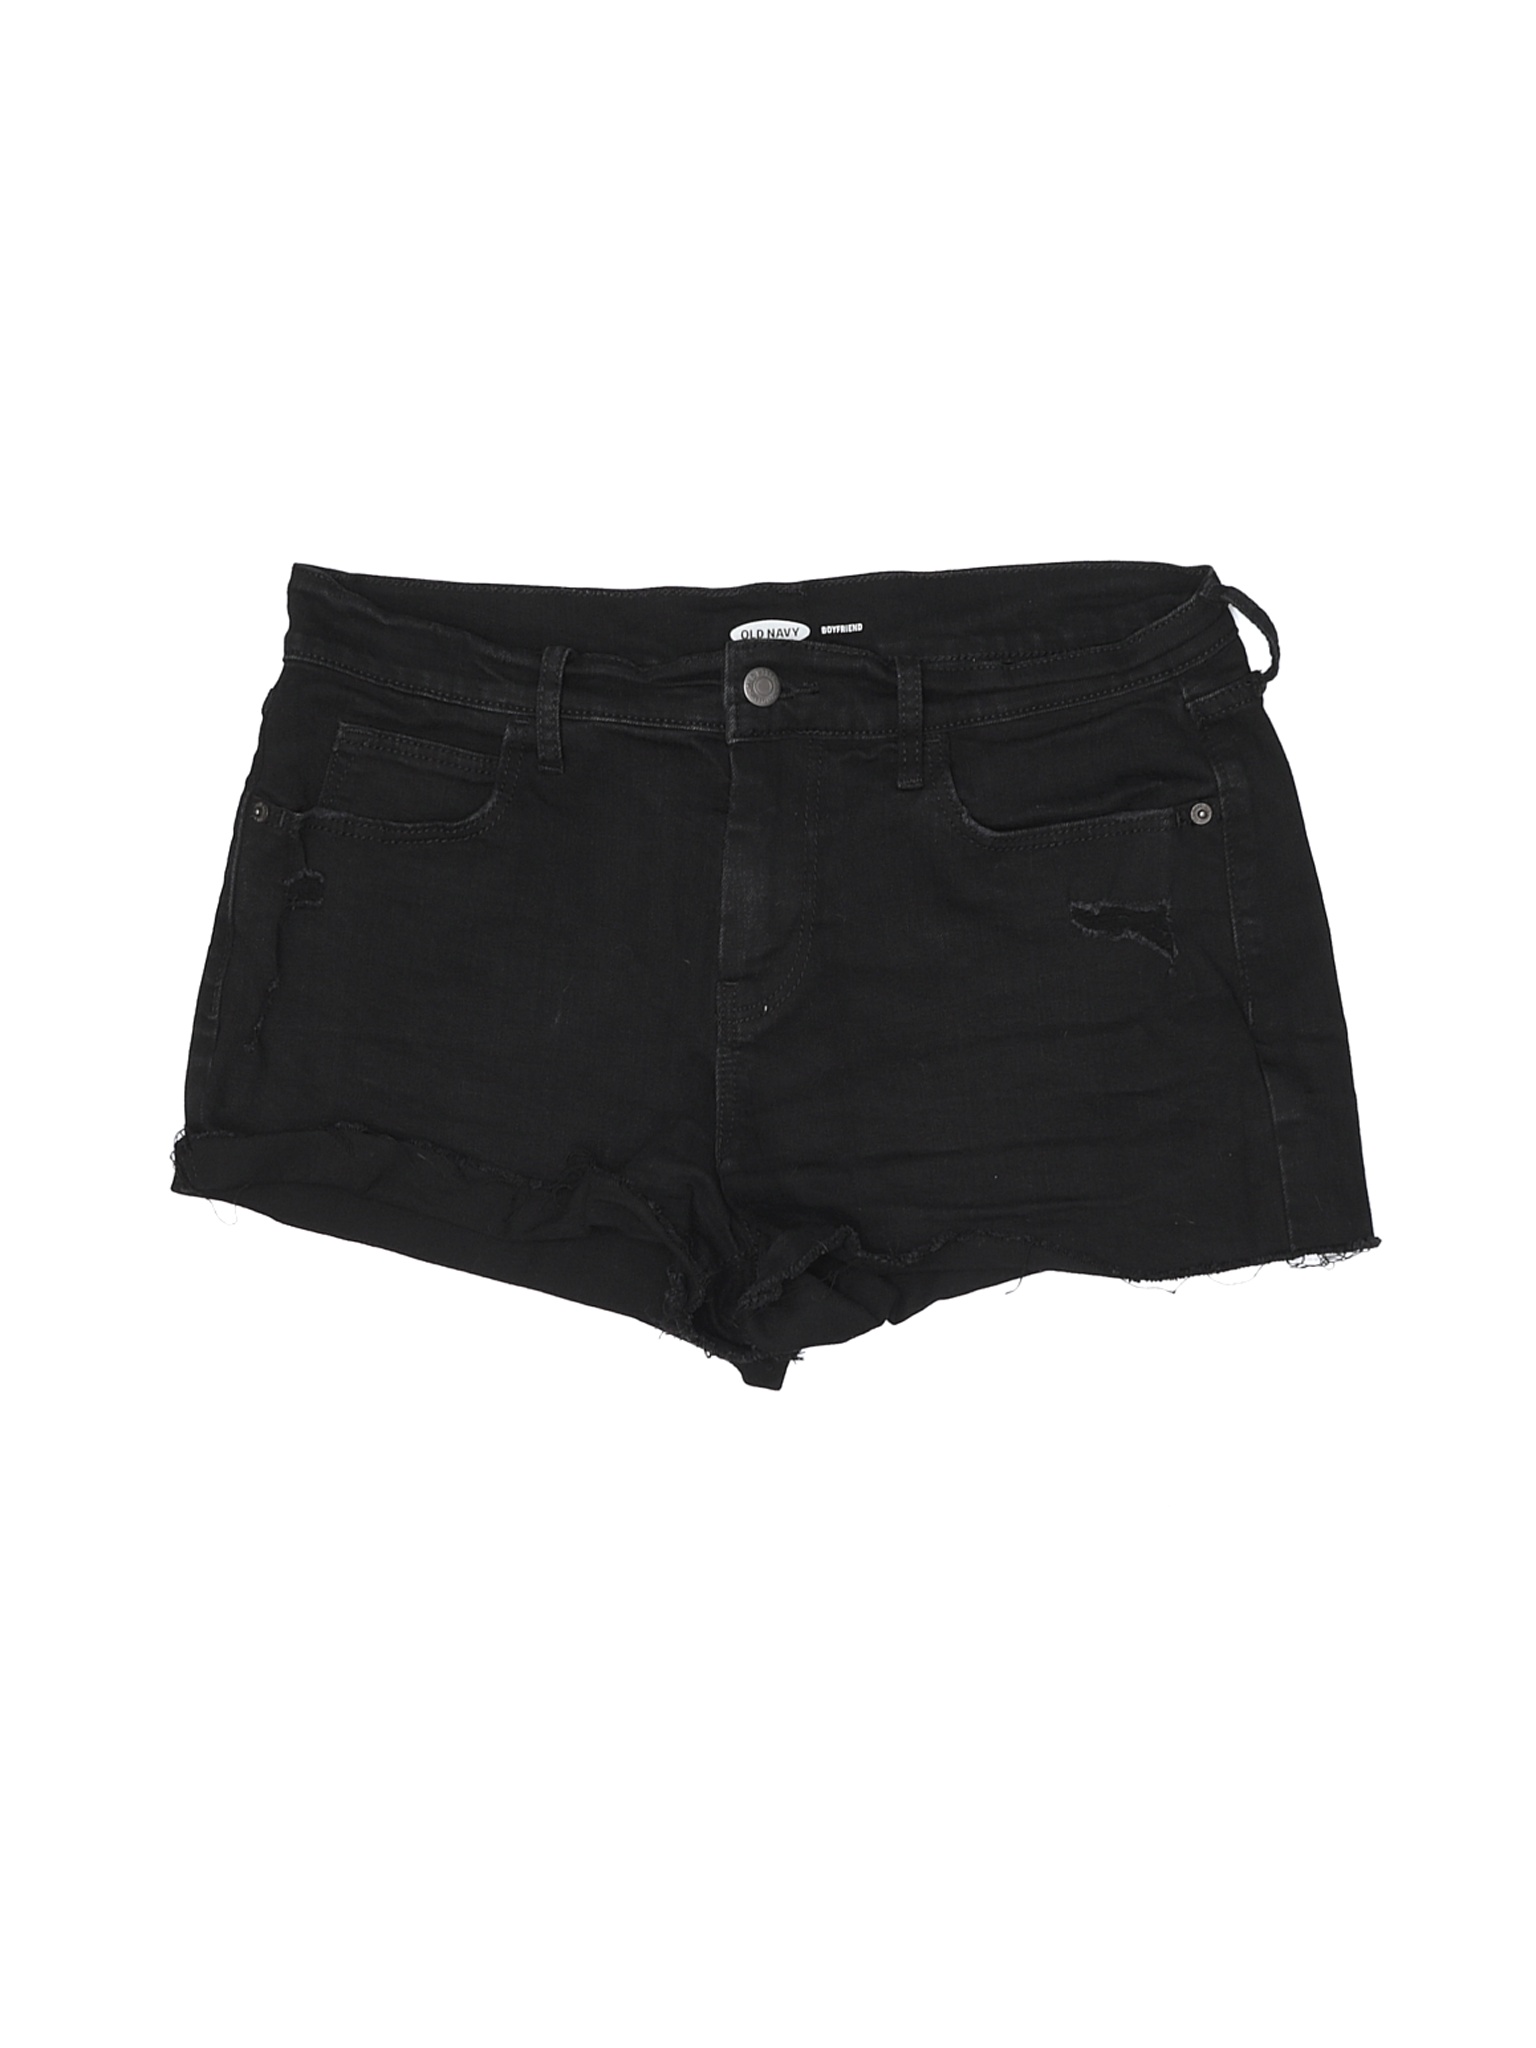 Old Navy Women Black Denim Shorts 8 | eBay